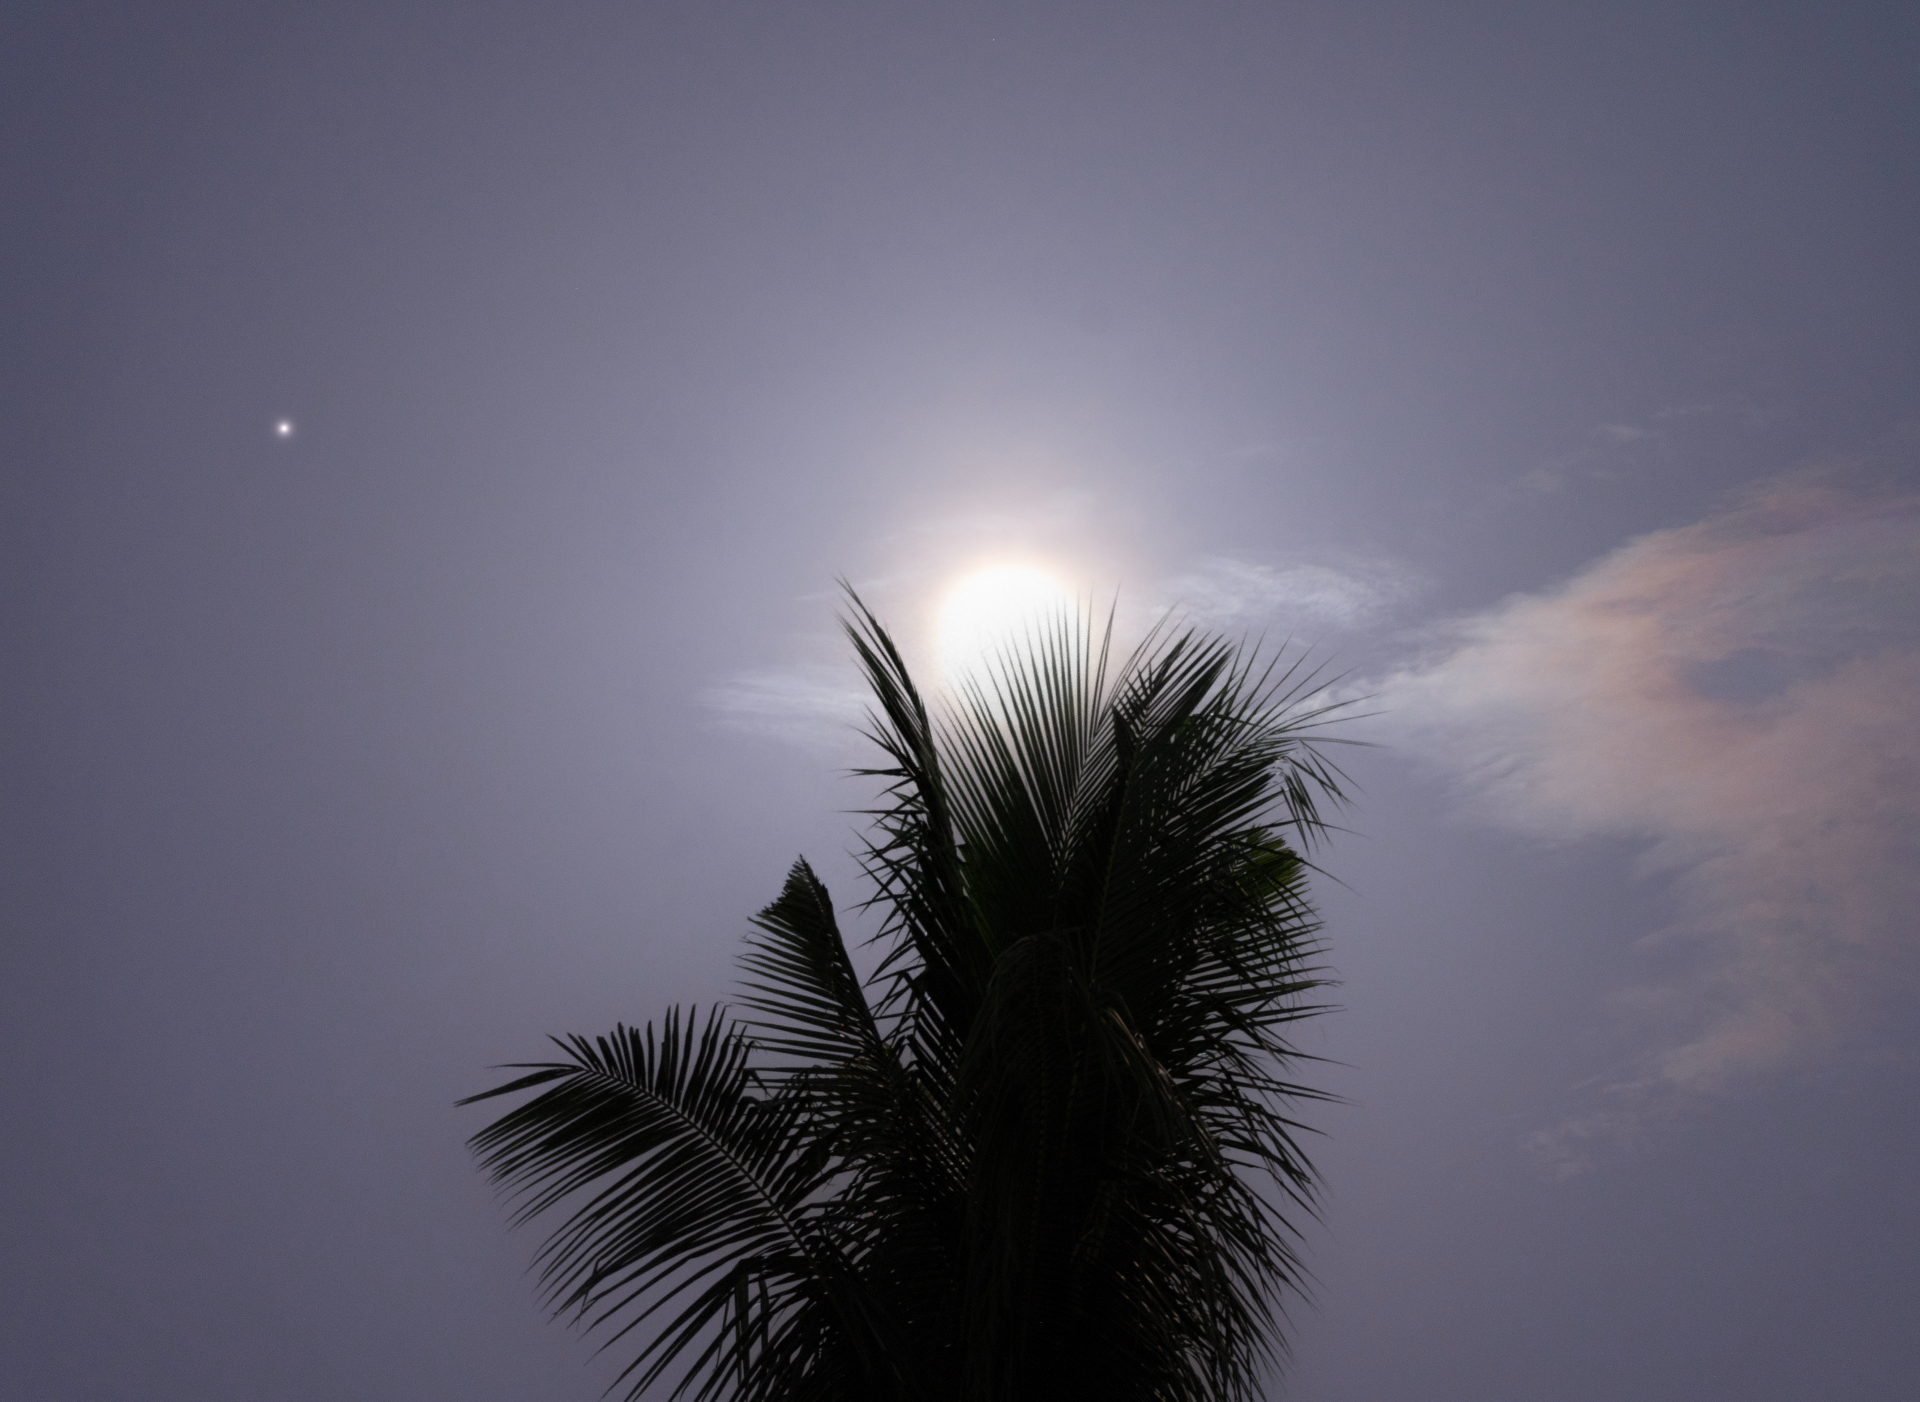 De reusachtige blauwe maan schijnt helder achter een palmboom, terwijl links van de maan het kleine stipje van Saturnus zichtbaar is.